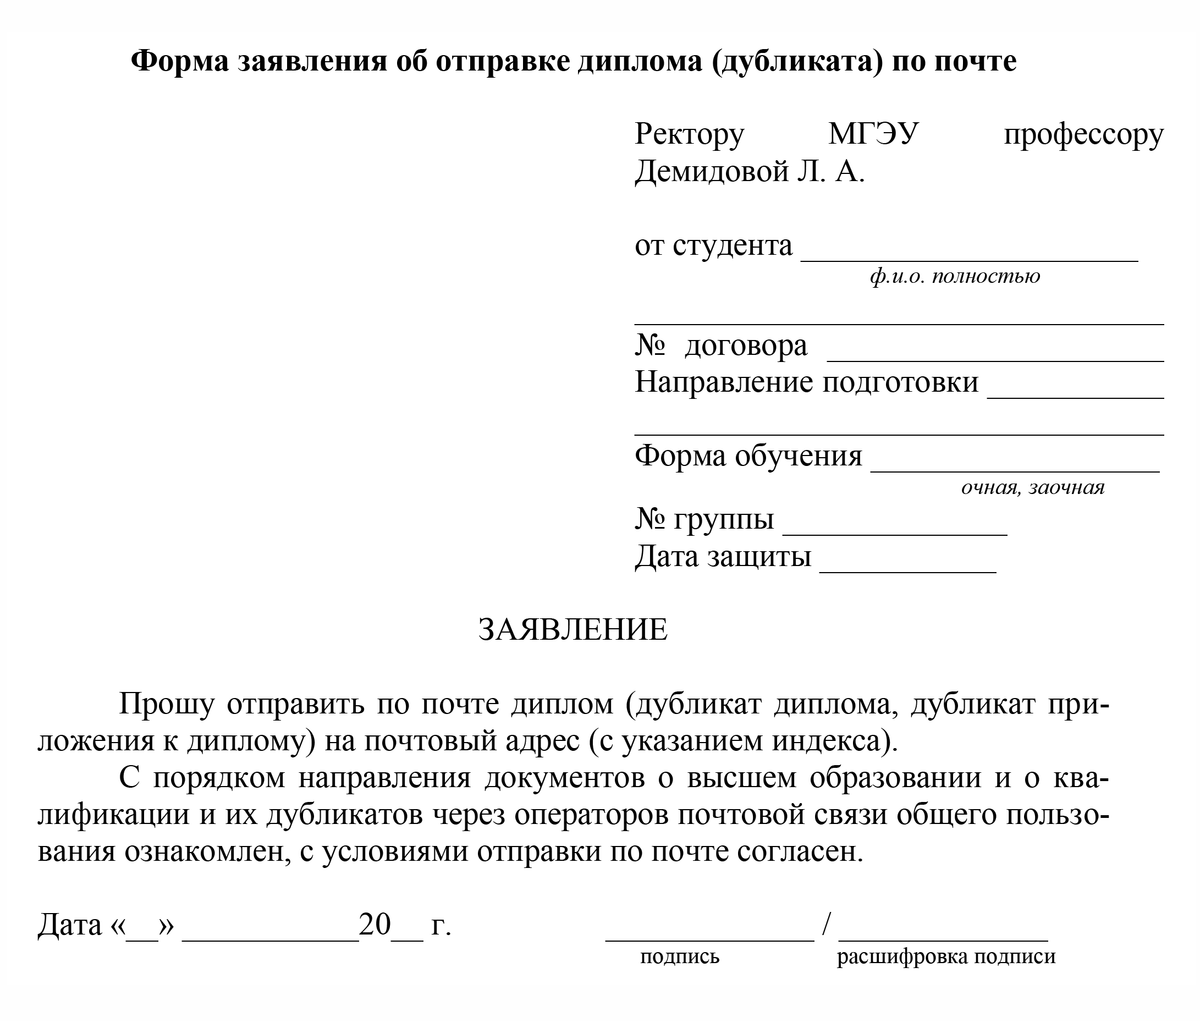 Форма заявления на отправку диплома МГЭУ по почте. Источник: mgeu-nn.ru